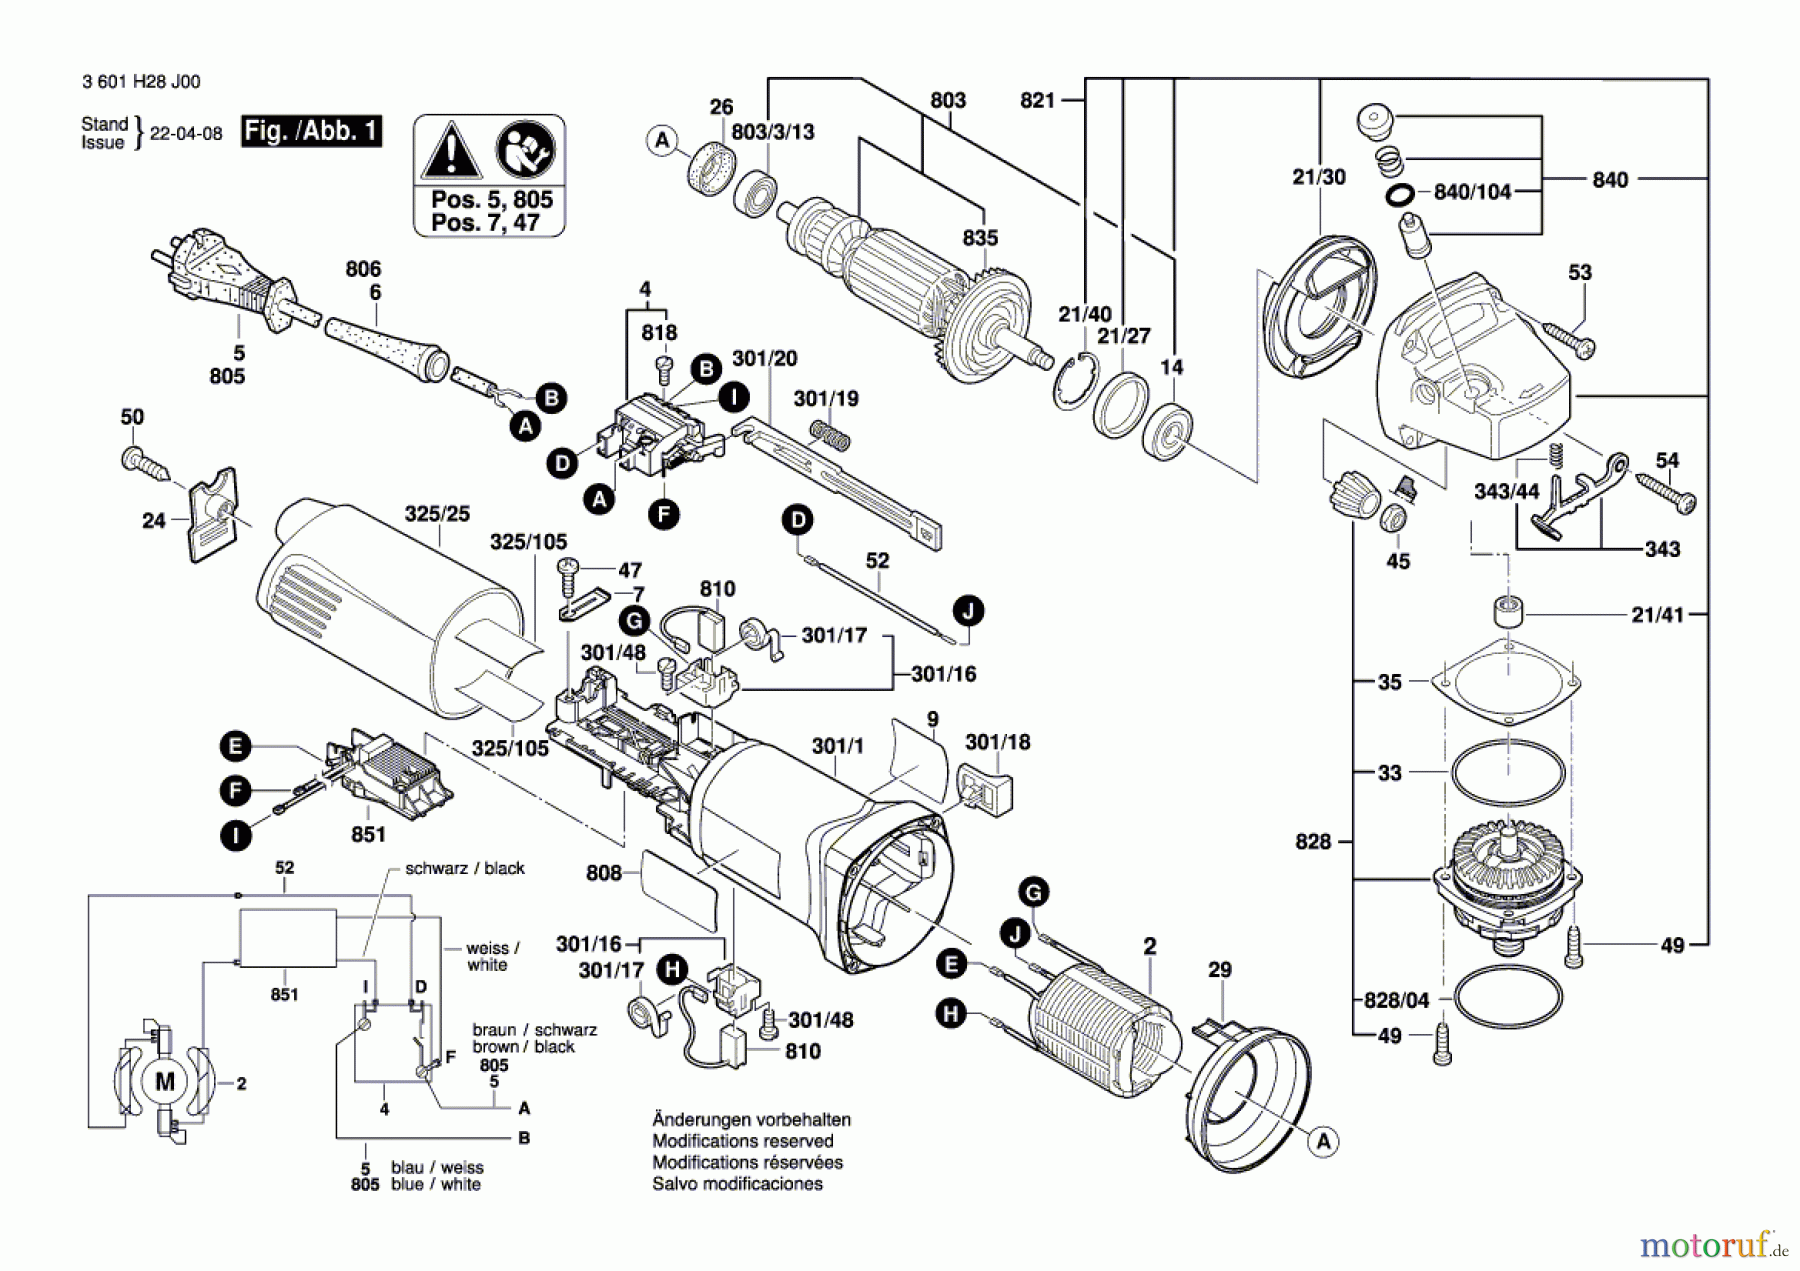  Bosch Werkzeug Winkelschleifer CG 10-125 Seite 1